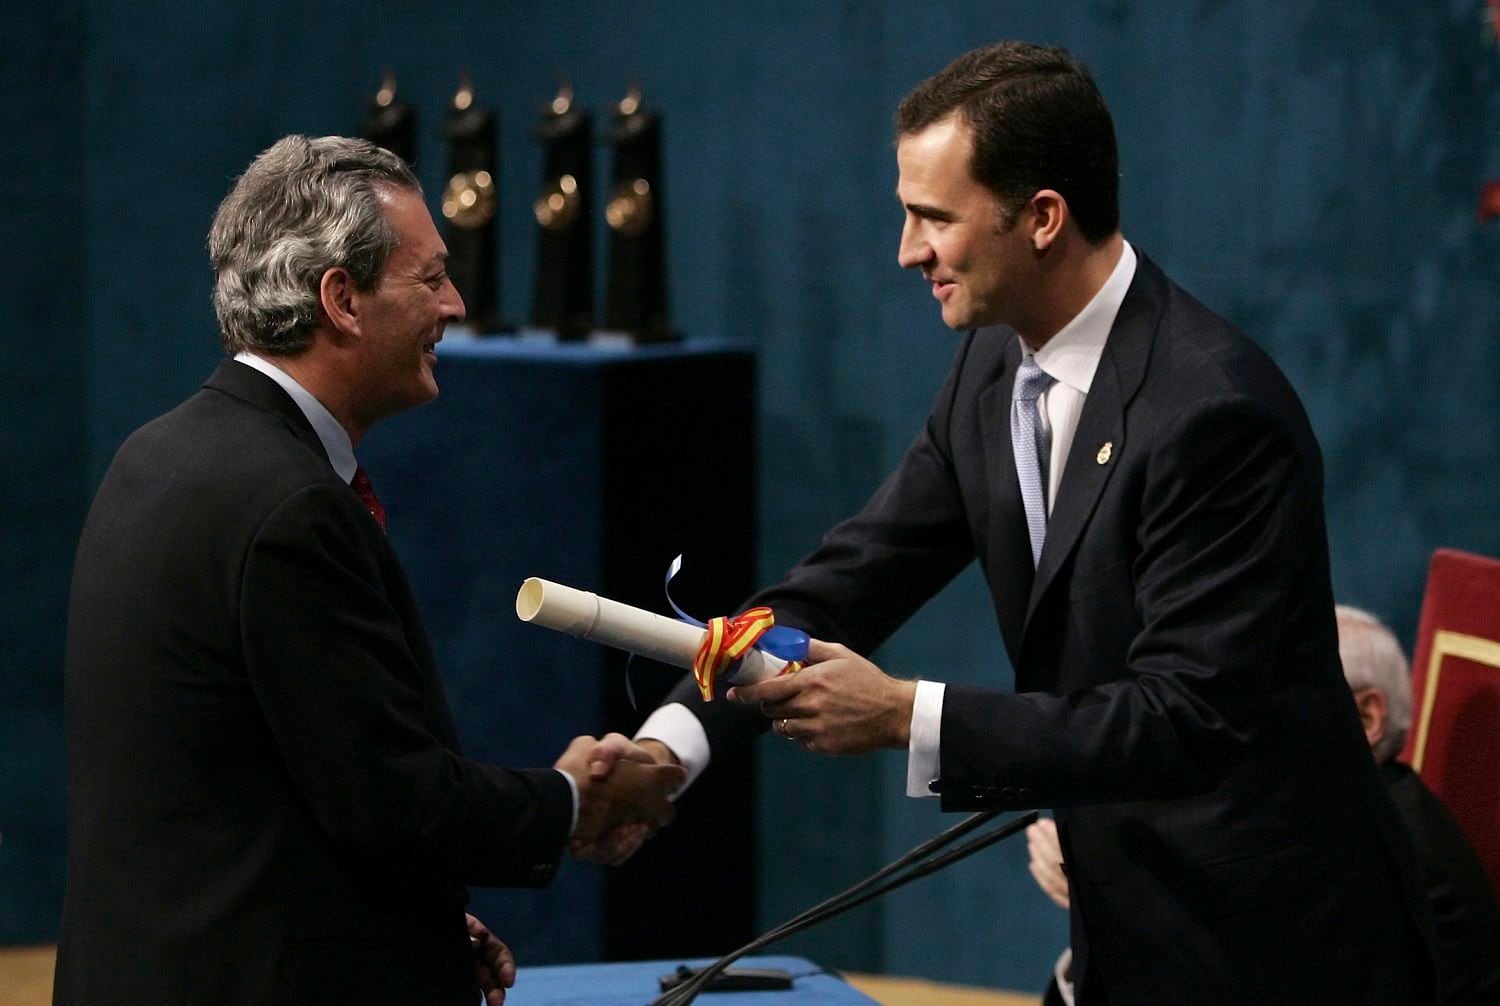 Paul Auster, izquierda, recibe el premio Príncipe de Asturias 2006 de Literatura del príncipe Felipe de España y Asturias en una ceremonia en Oviedo, España, el 20 de octubre de 2006.